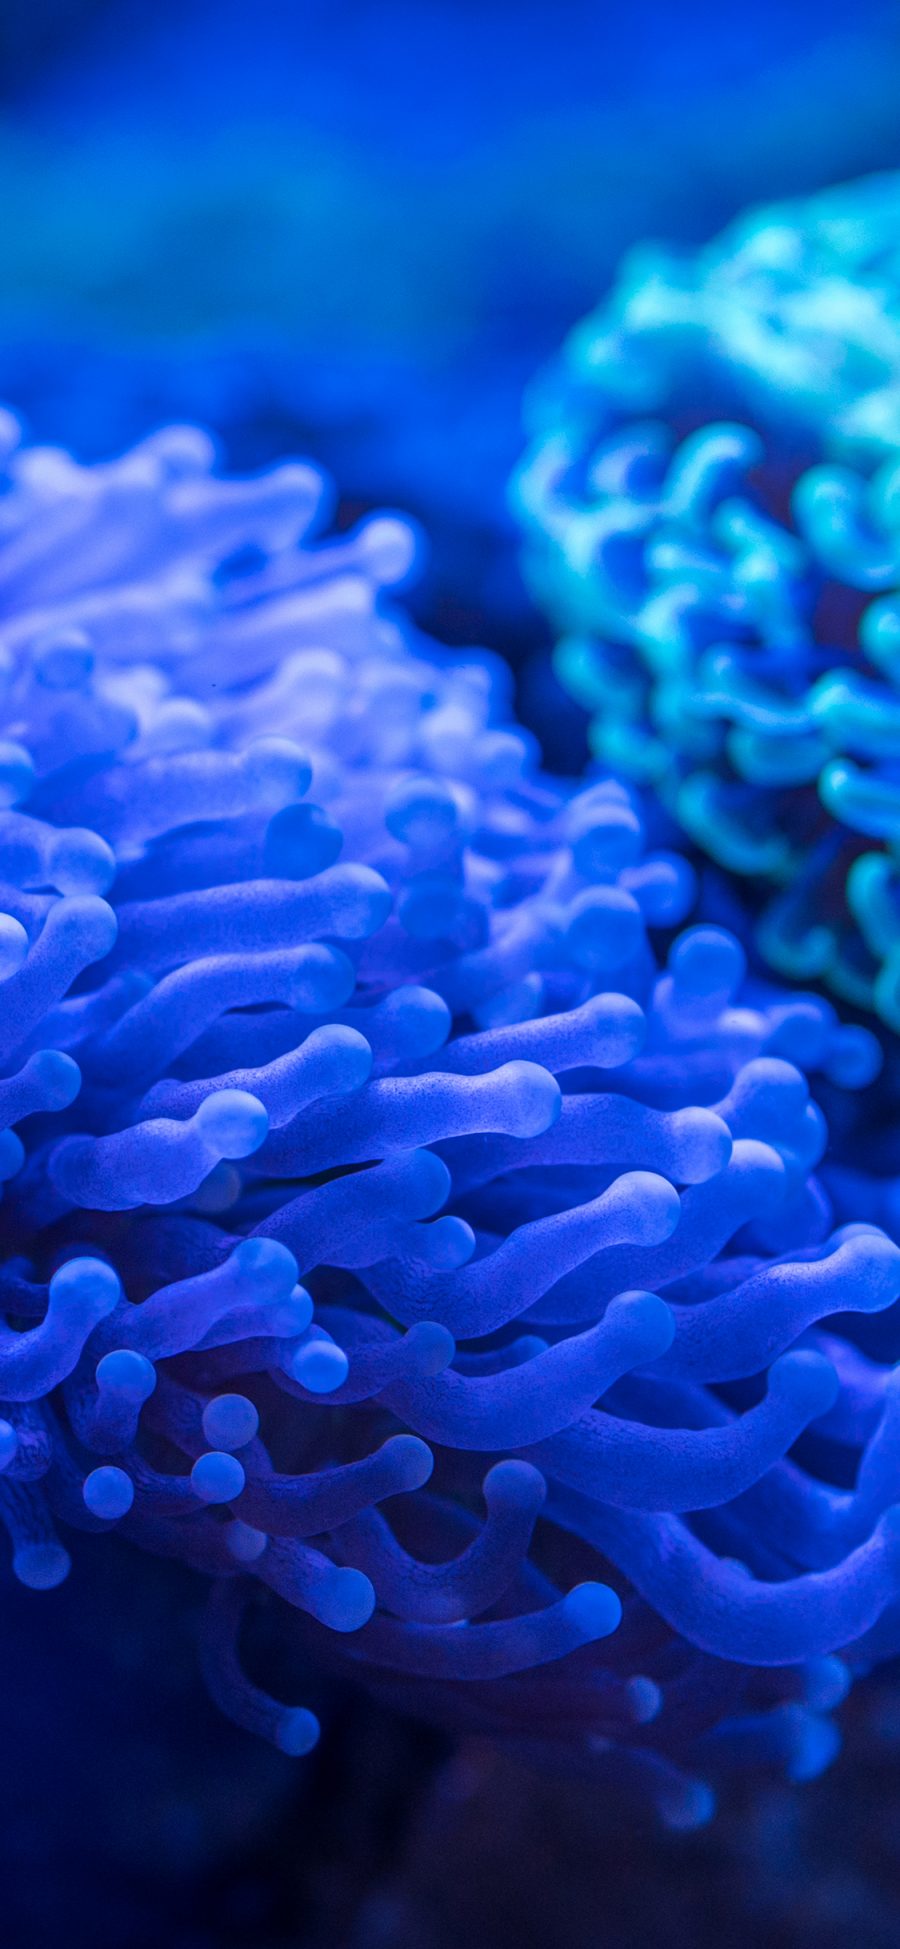 [2436×1125]珊瑚 海洋生物 海底 蓝色 触角 苹果手机壁纸图片